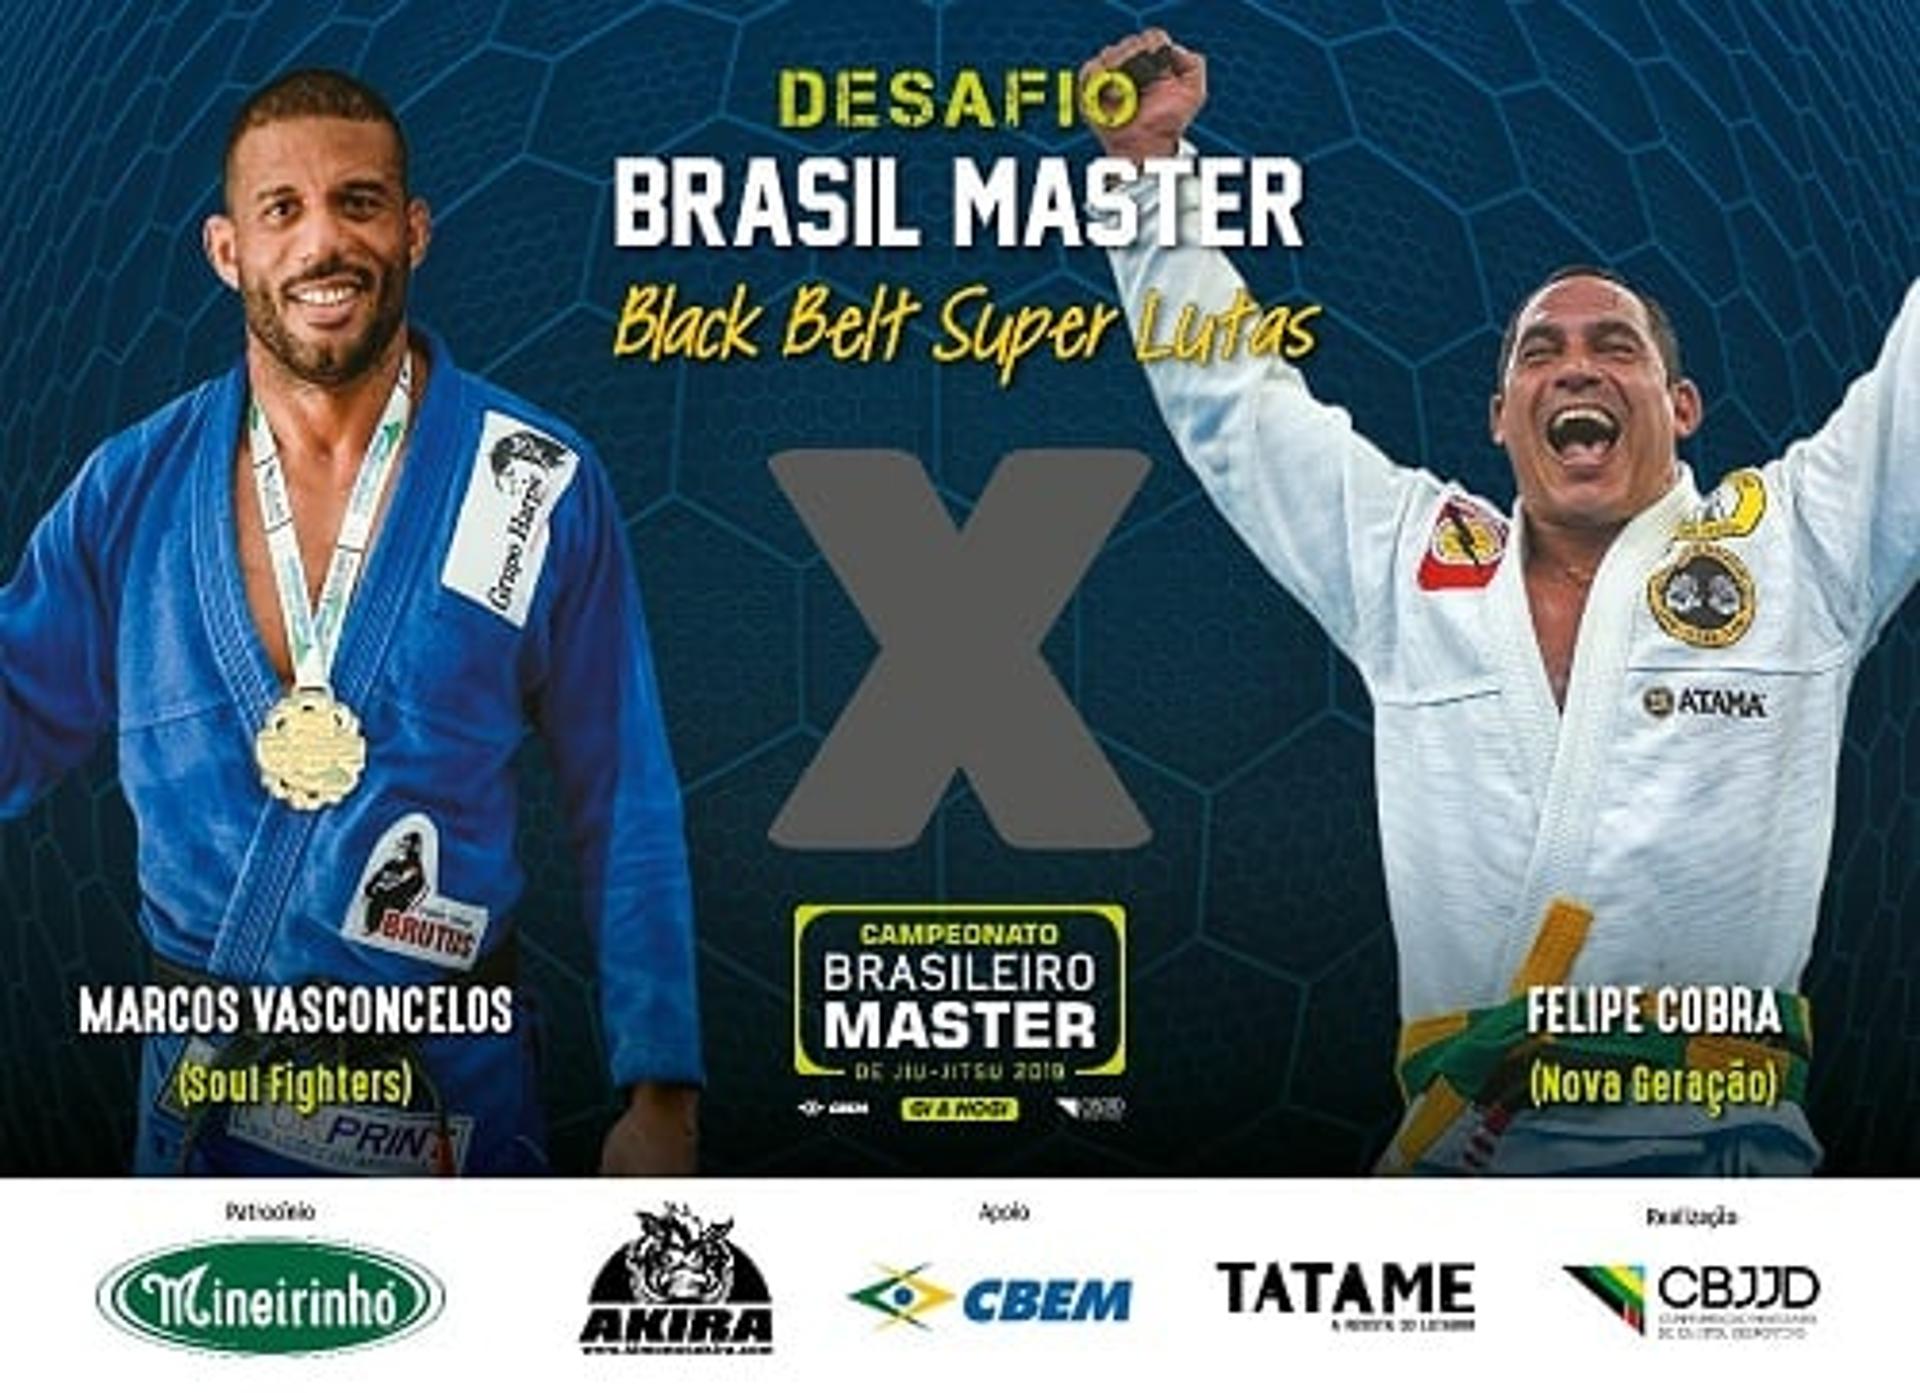 Brasileiro Master de Jiu-Jitsu terá como atração as superlutas (Foto: Divulgação/CBJJD)